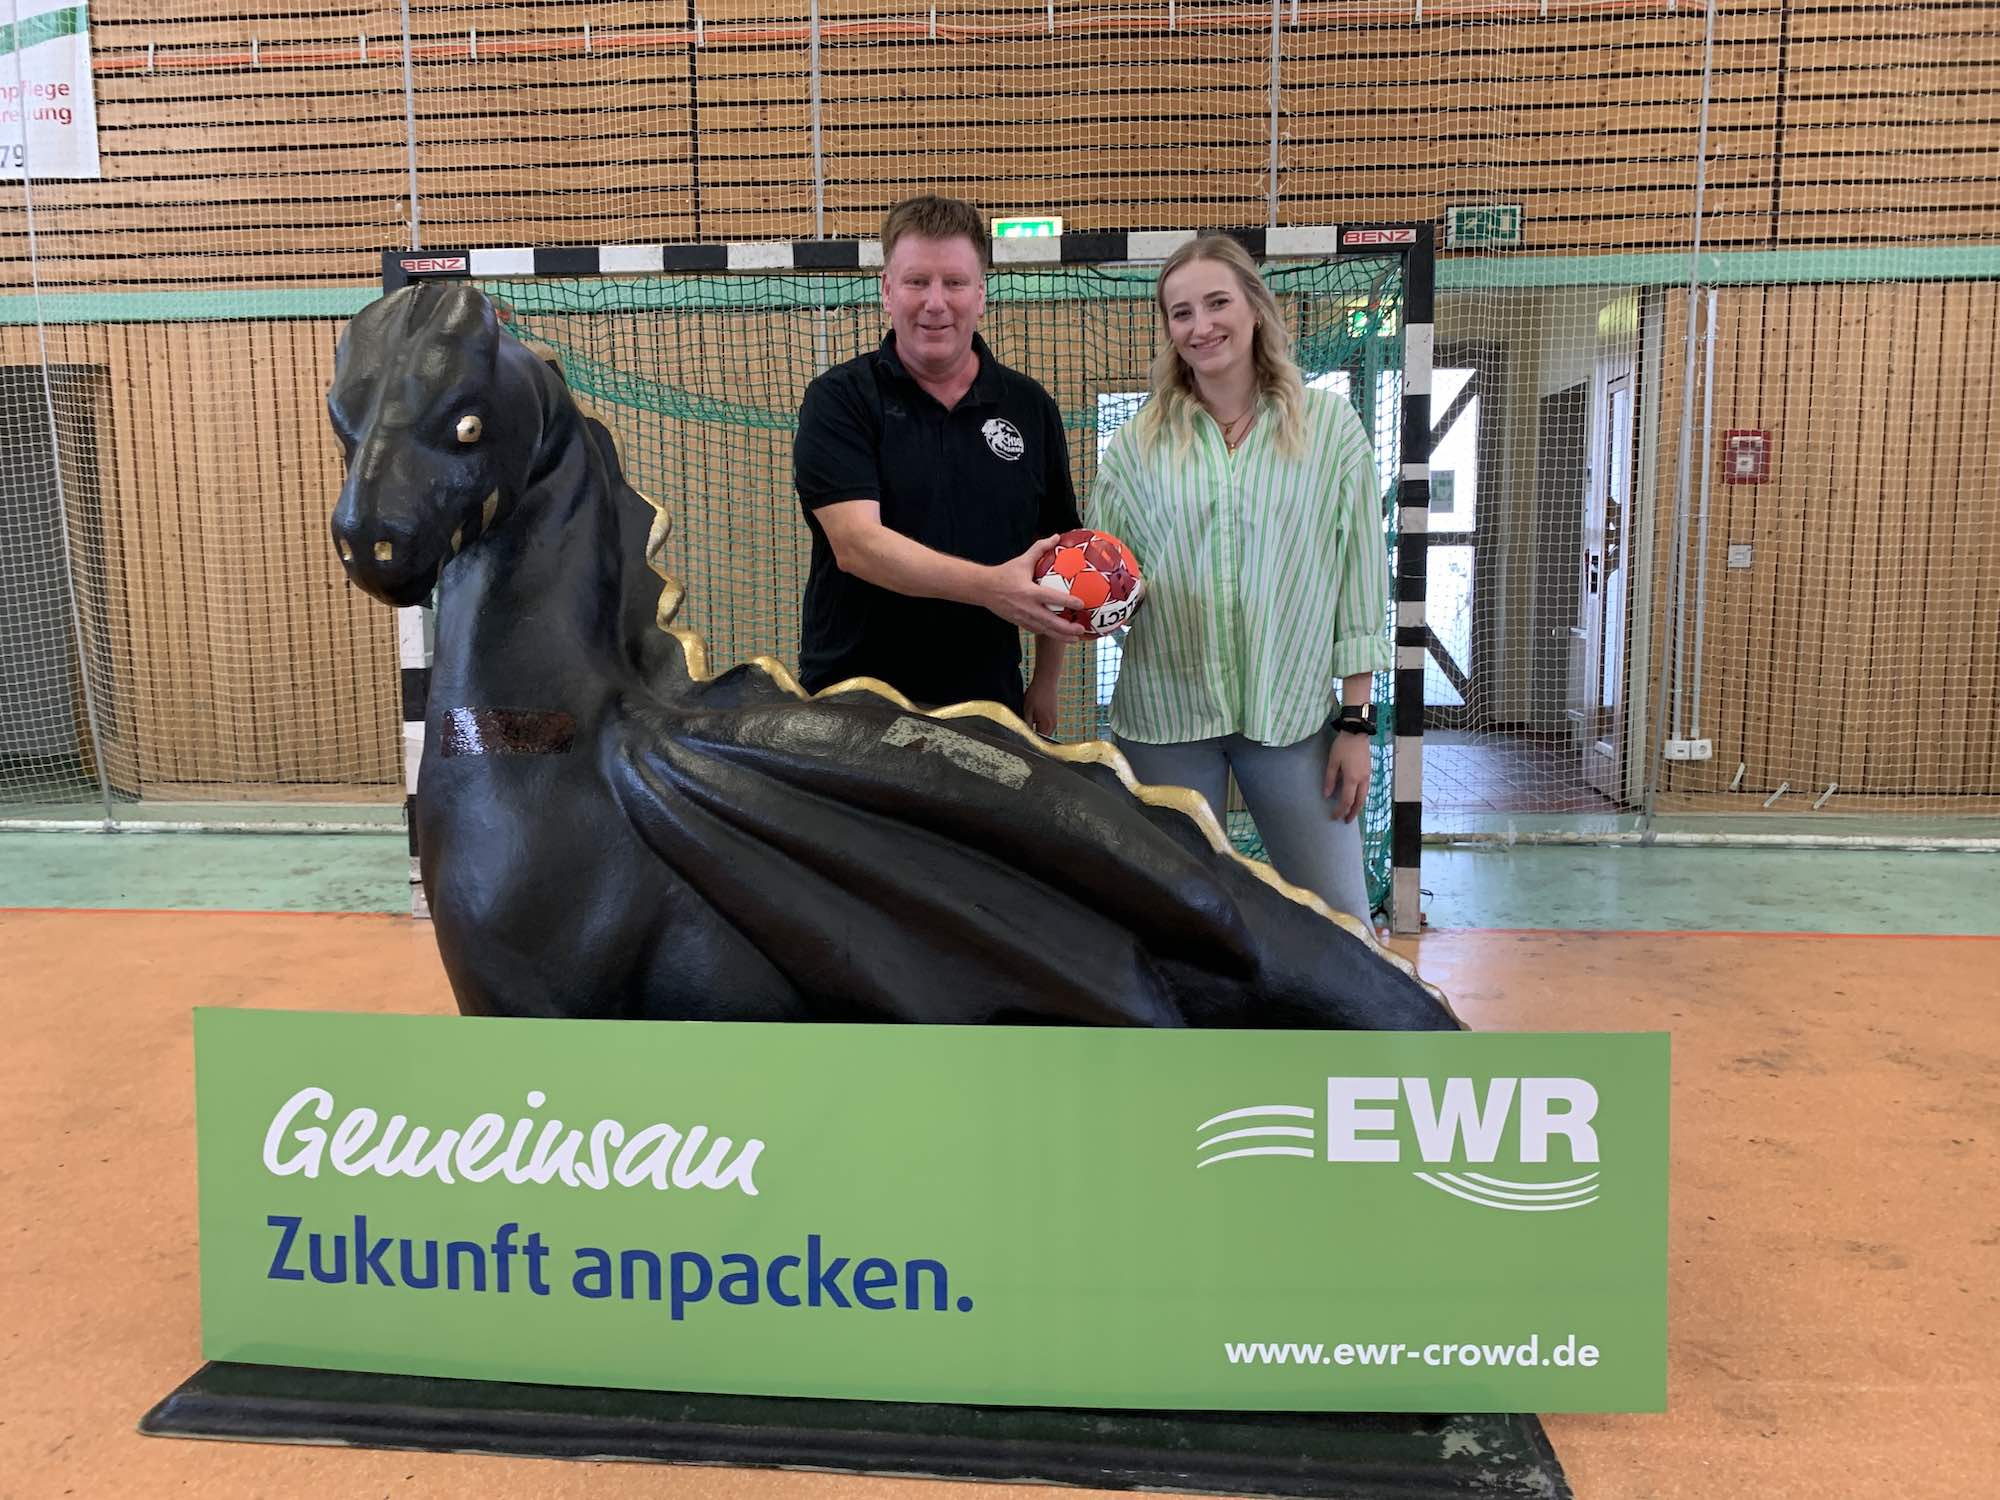 EWR AG und Wormser Drachen: Starke Partnerschaft geht weiter